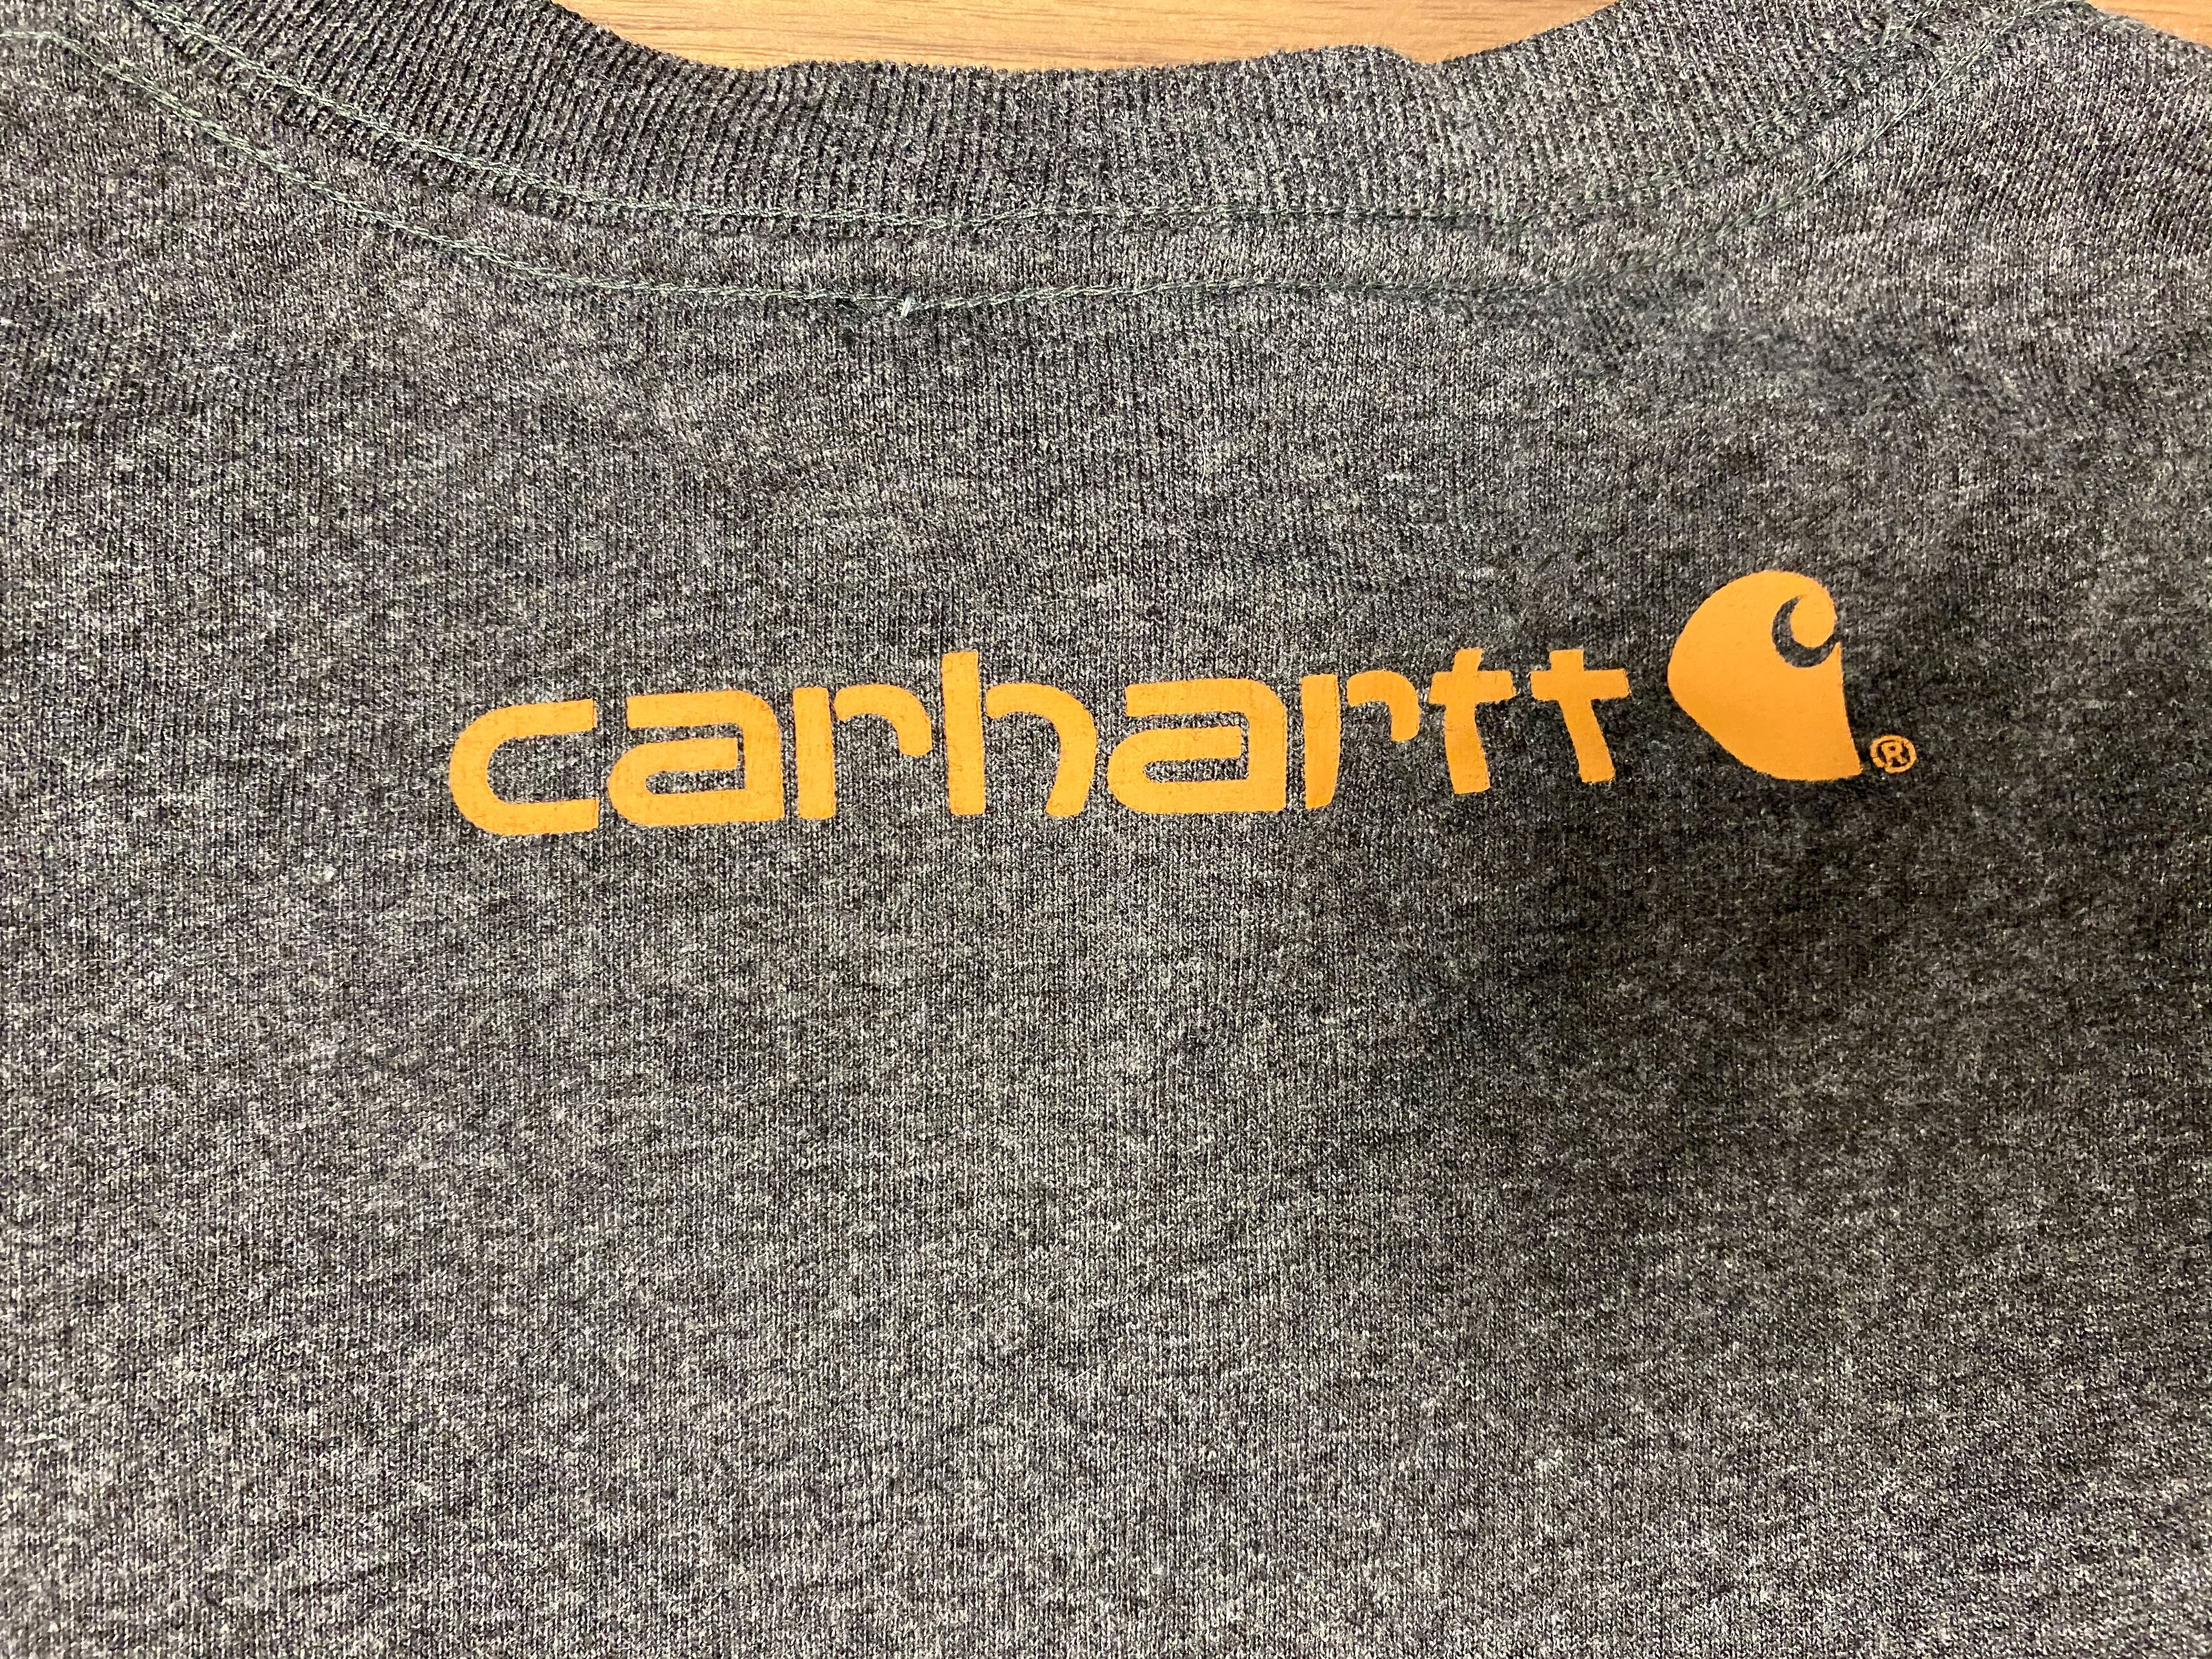 Carhatt Logo Tee - Charcoal